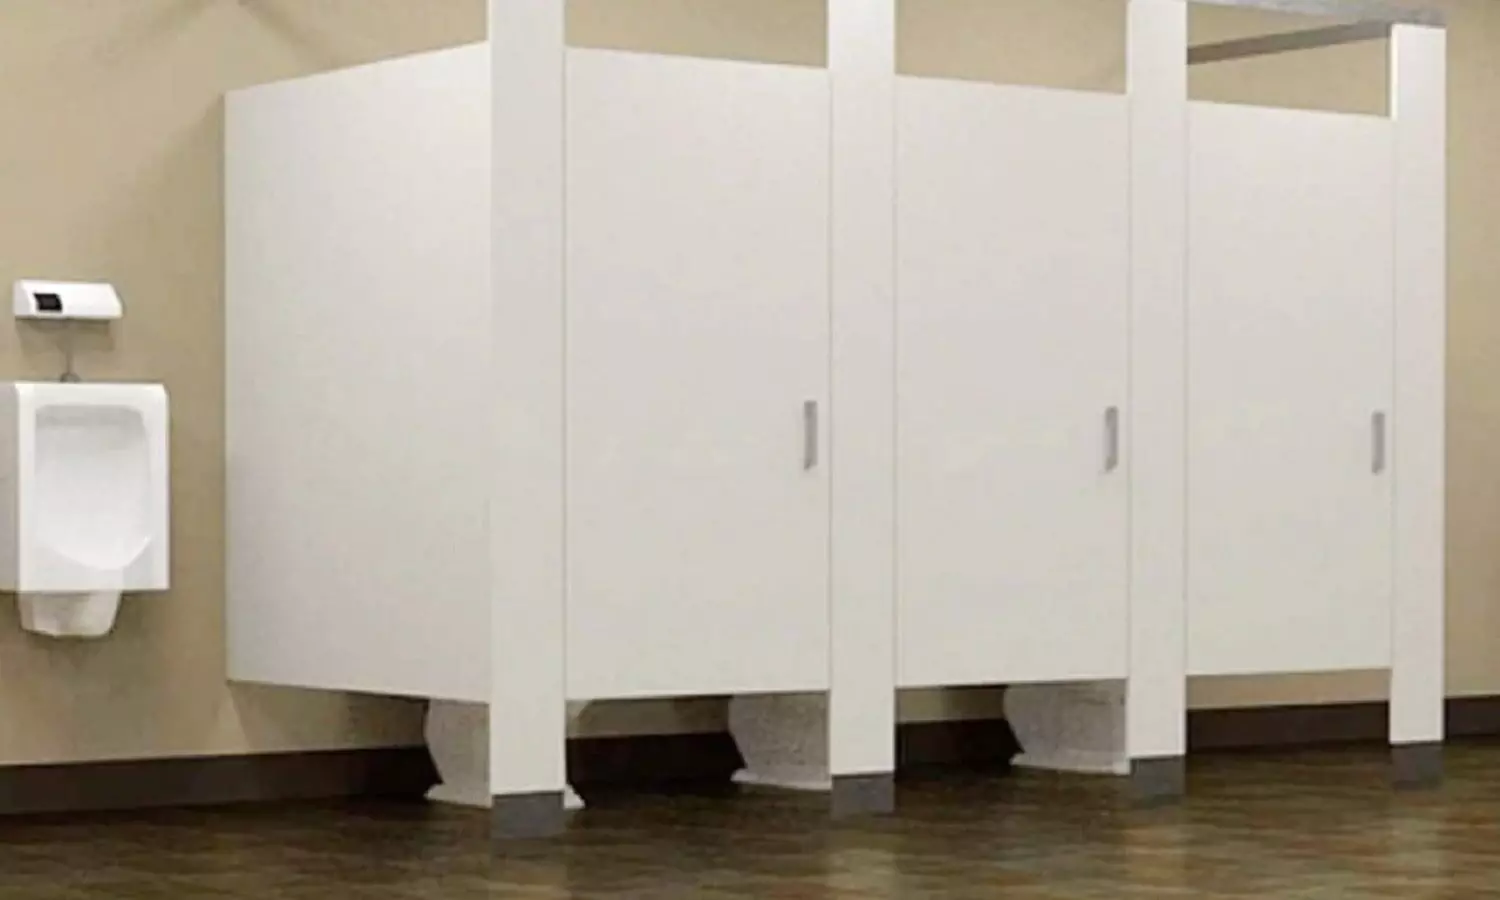 मॉल-एयरपोर्ट में टॉयलेट के दरवाजे छोटे क्यों होते हैं